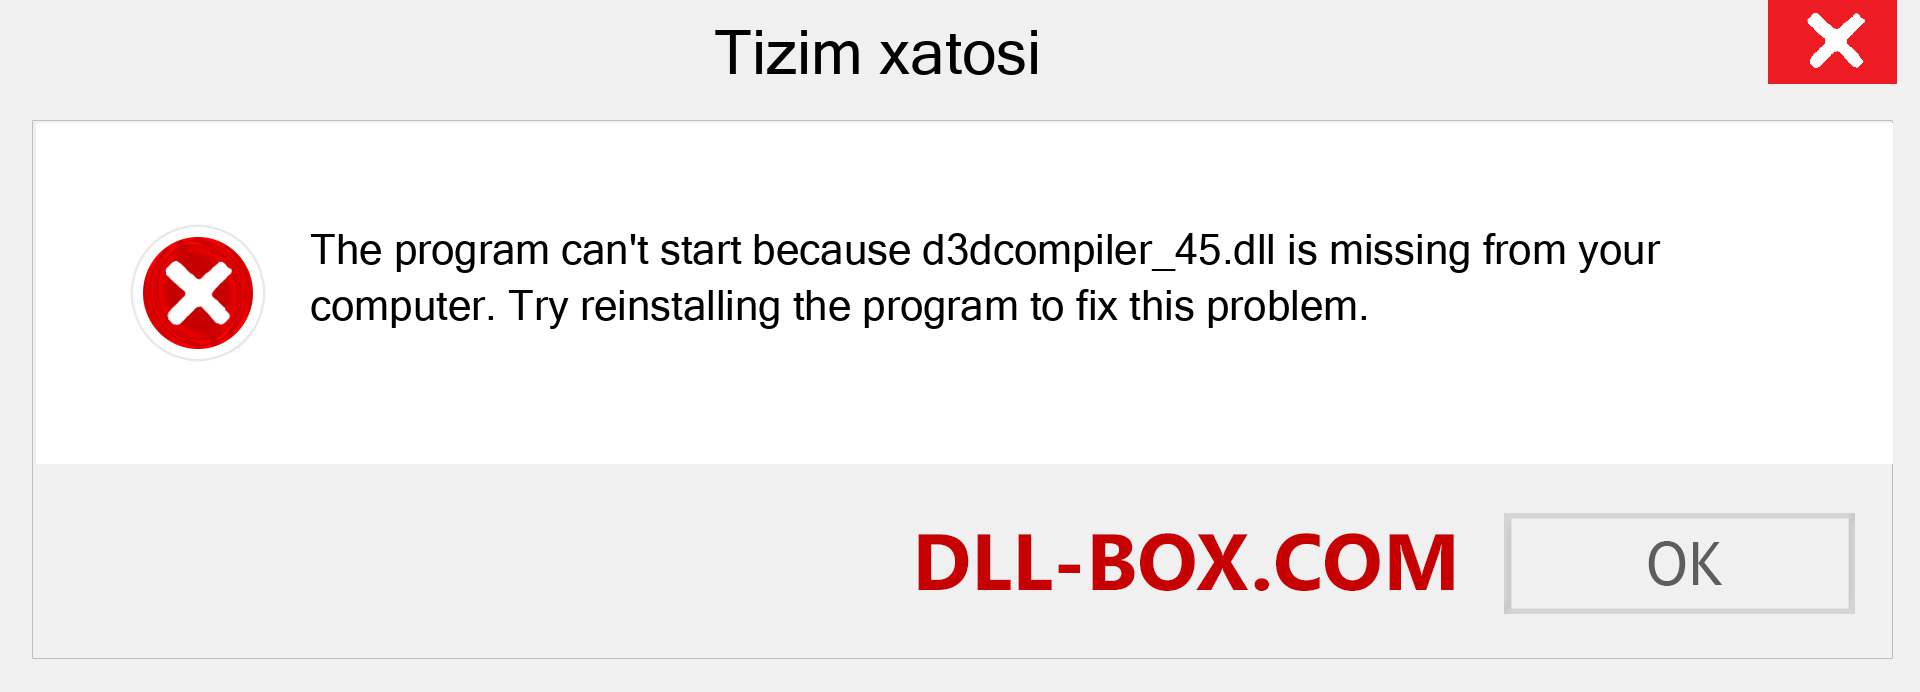 d3dcompiler_45.dll fayli yo'qolganmi?. Windows 7, 8, 10 uchun yuklab olish - Windowsda d3dcompiler_45 dll etishmayotgan xatoni tuzating, rasmlar, rasmlar